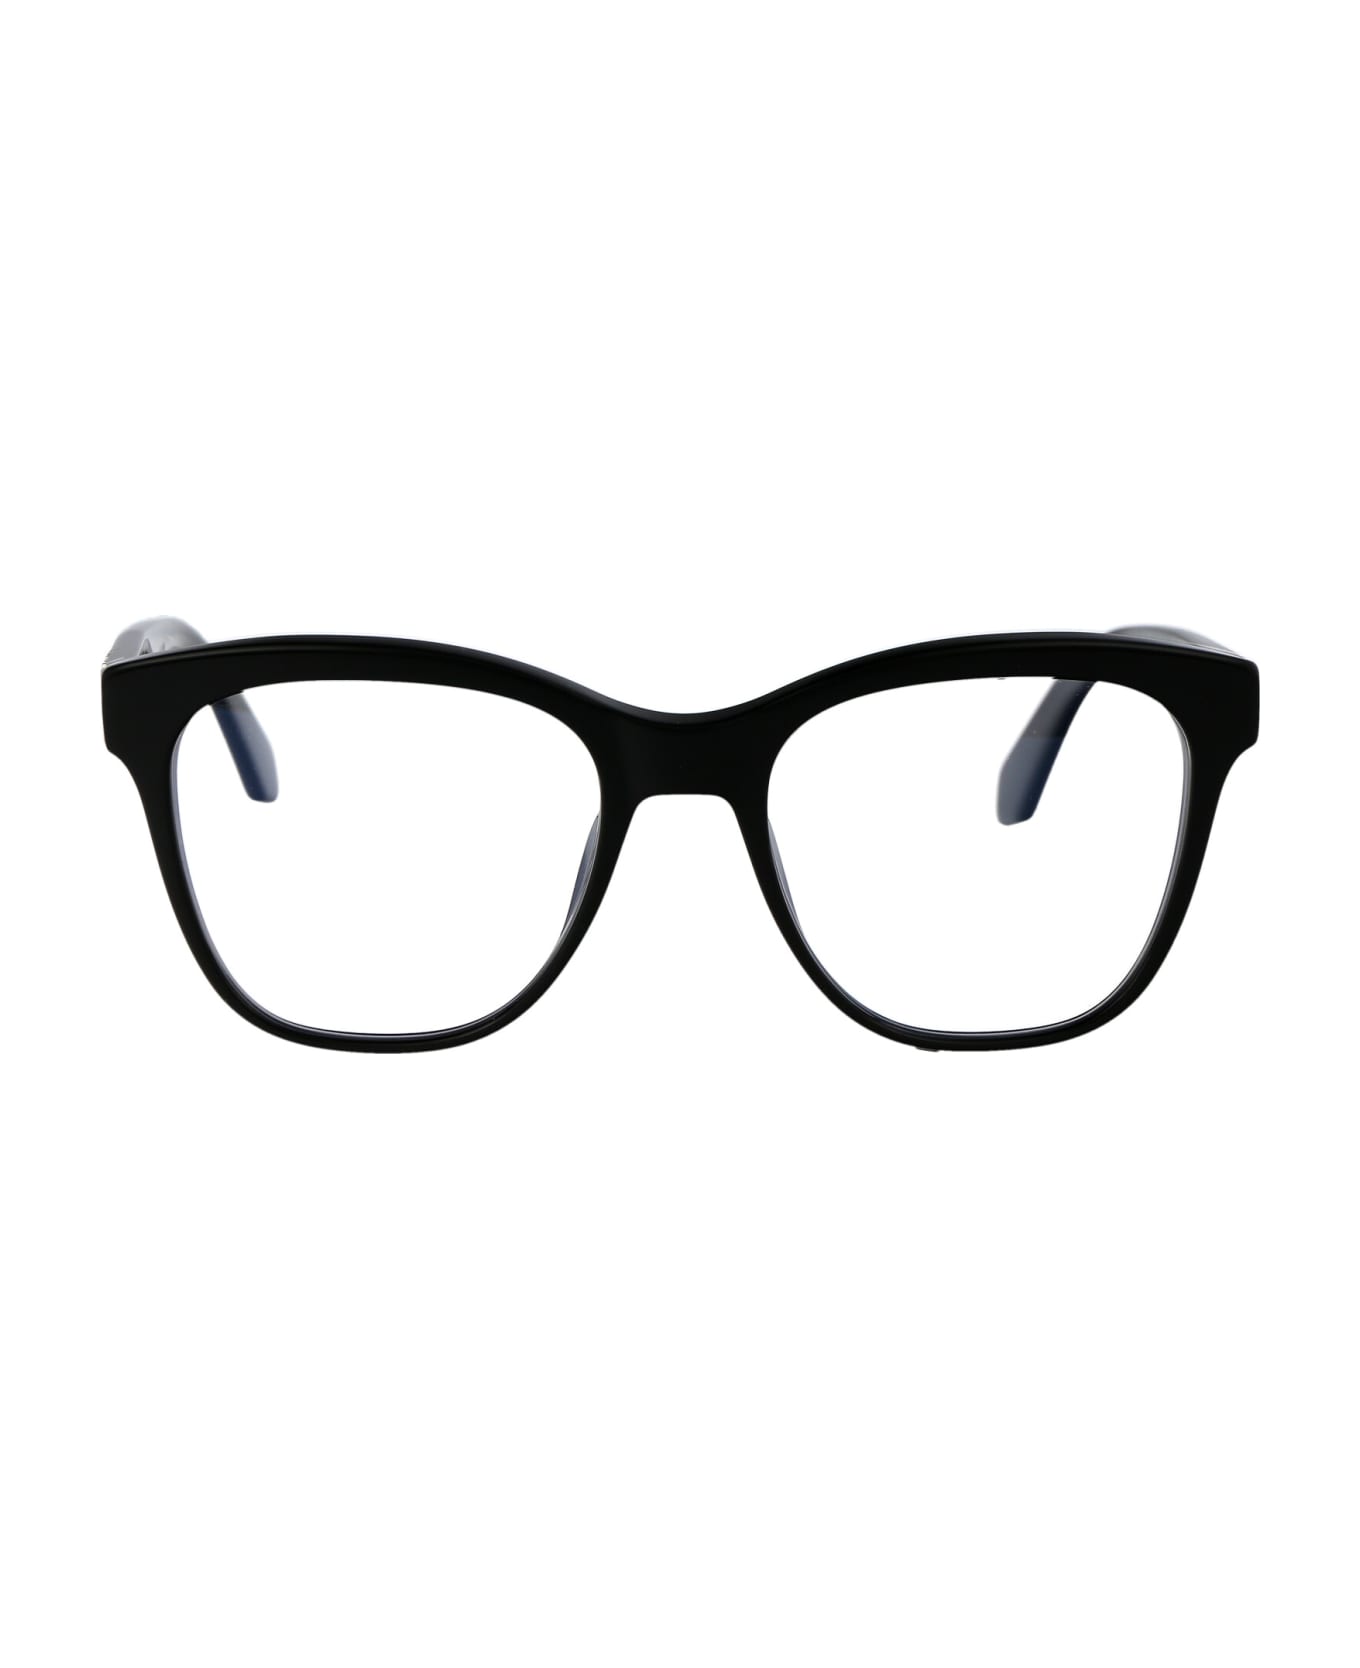 Off-White Optical Style 69 Glasses - 1000 BLACK アイウェア